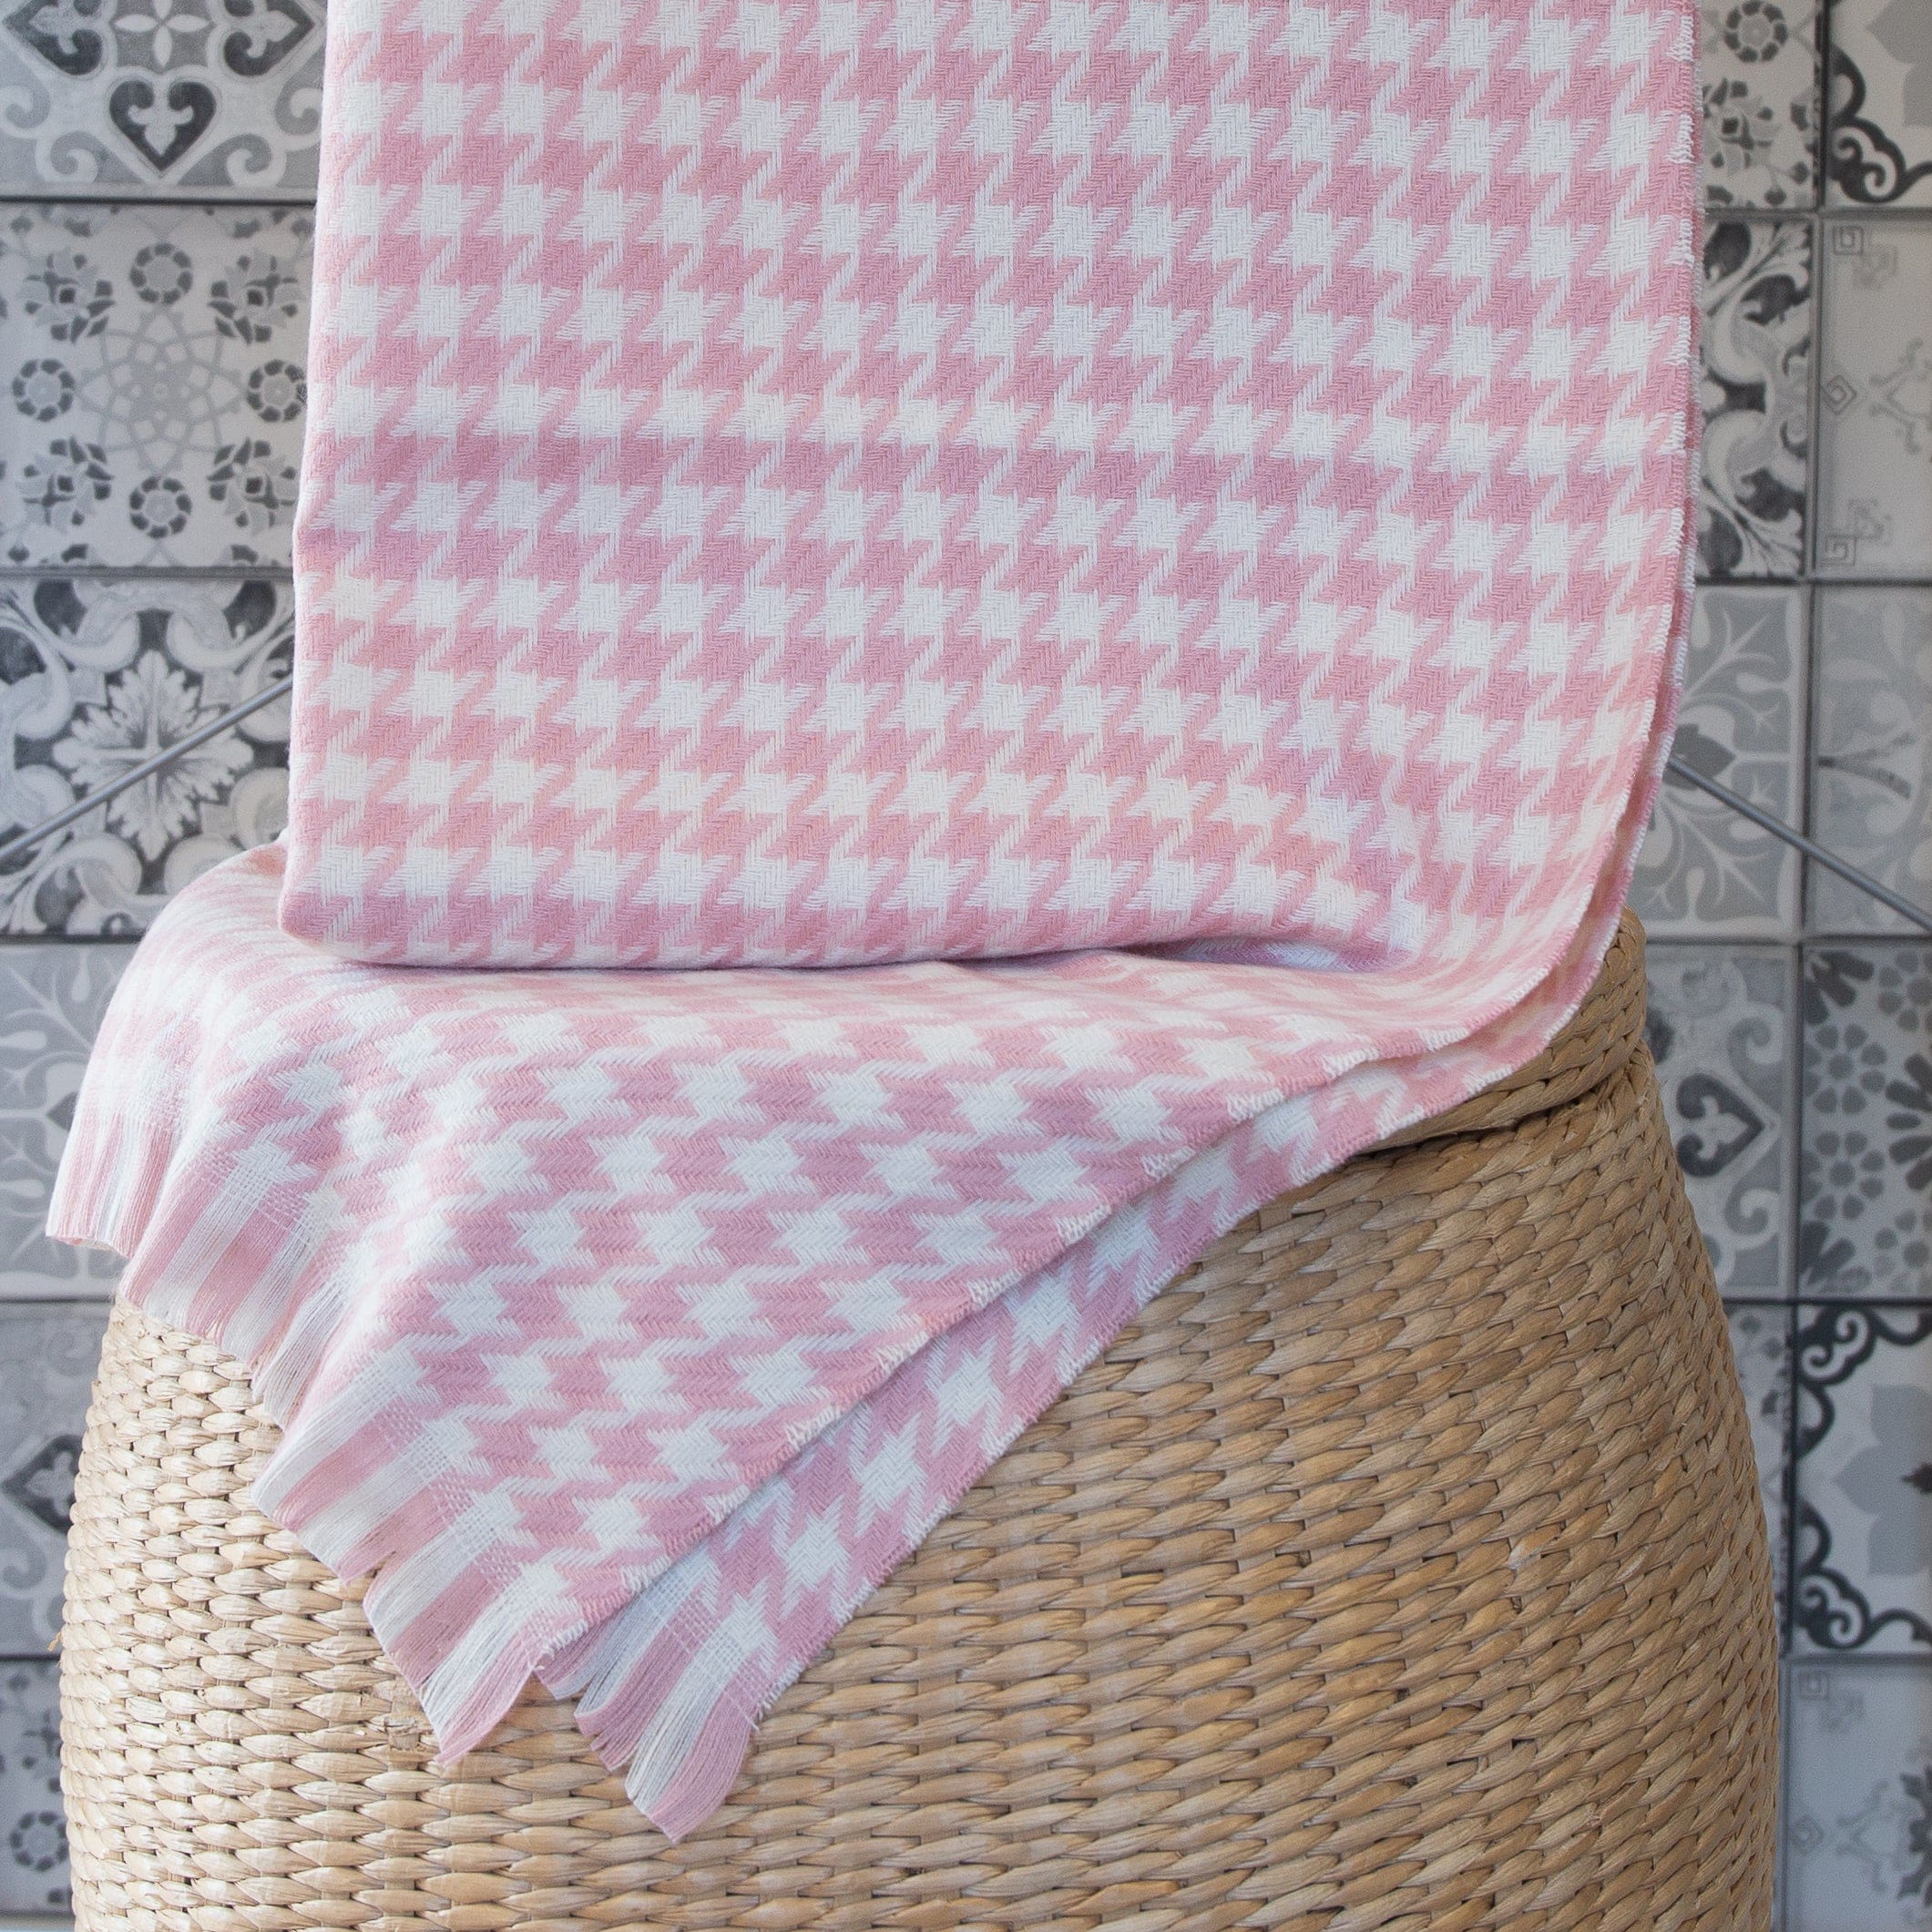 Tunja tørklæde - Pink - Tørklæde